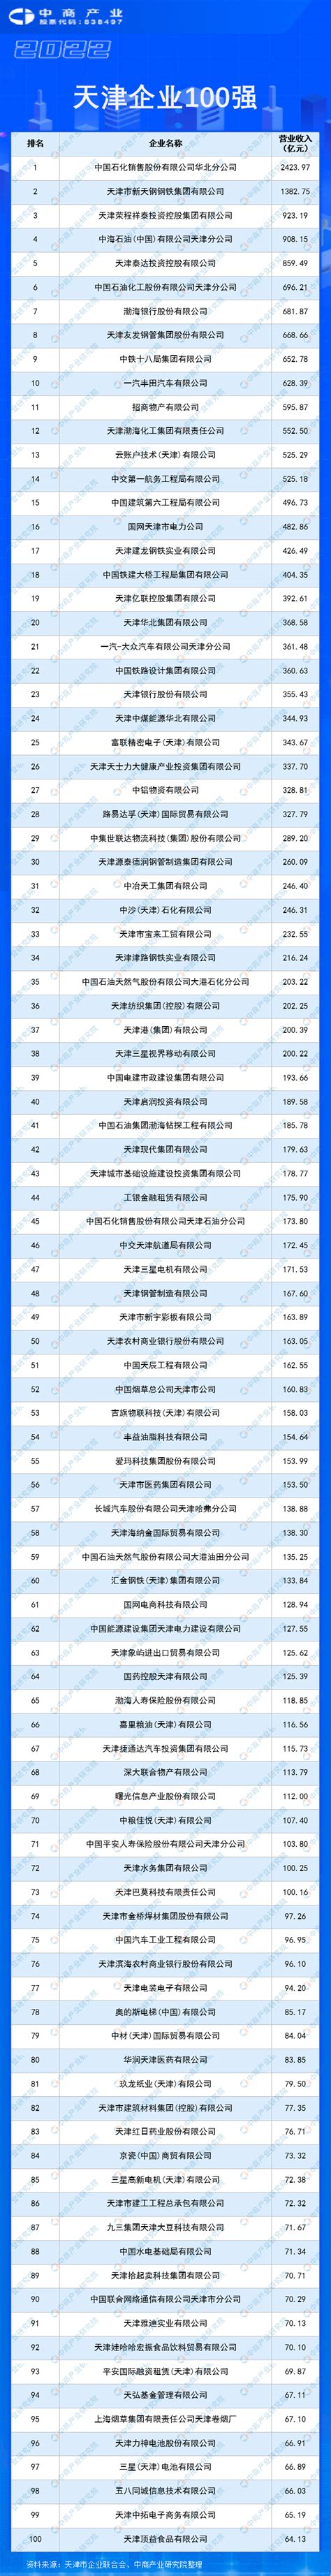 鹏翎集团喜获“天津市科技领军企业”称号。 - 新闻中心 - 天津鹏翎胶管股份有限公司